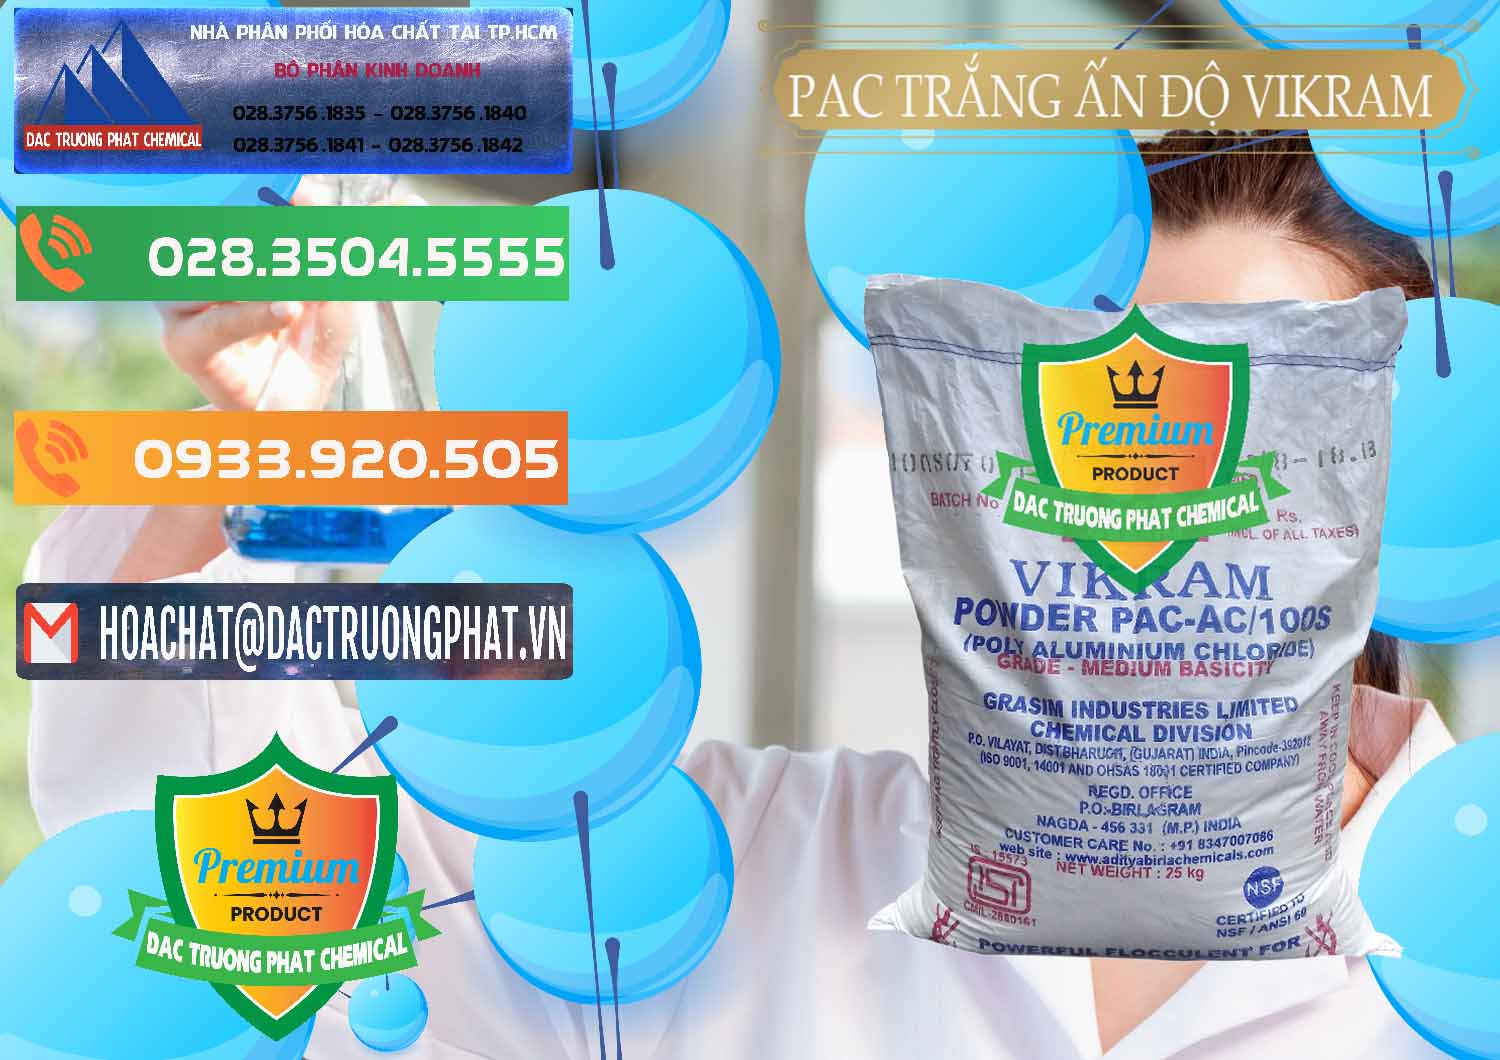 Cty chuyên nhập khẩu _ bán PAC - Polyaluminium Chloride Ấn Độ India Vikram - 0120 - Công ty chuyên cung ứng _ phân phối hóa chất tại TP.HCM - hoachatxulynuoc.com.vn